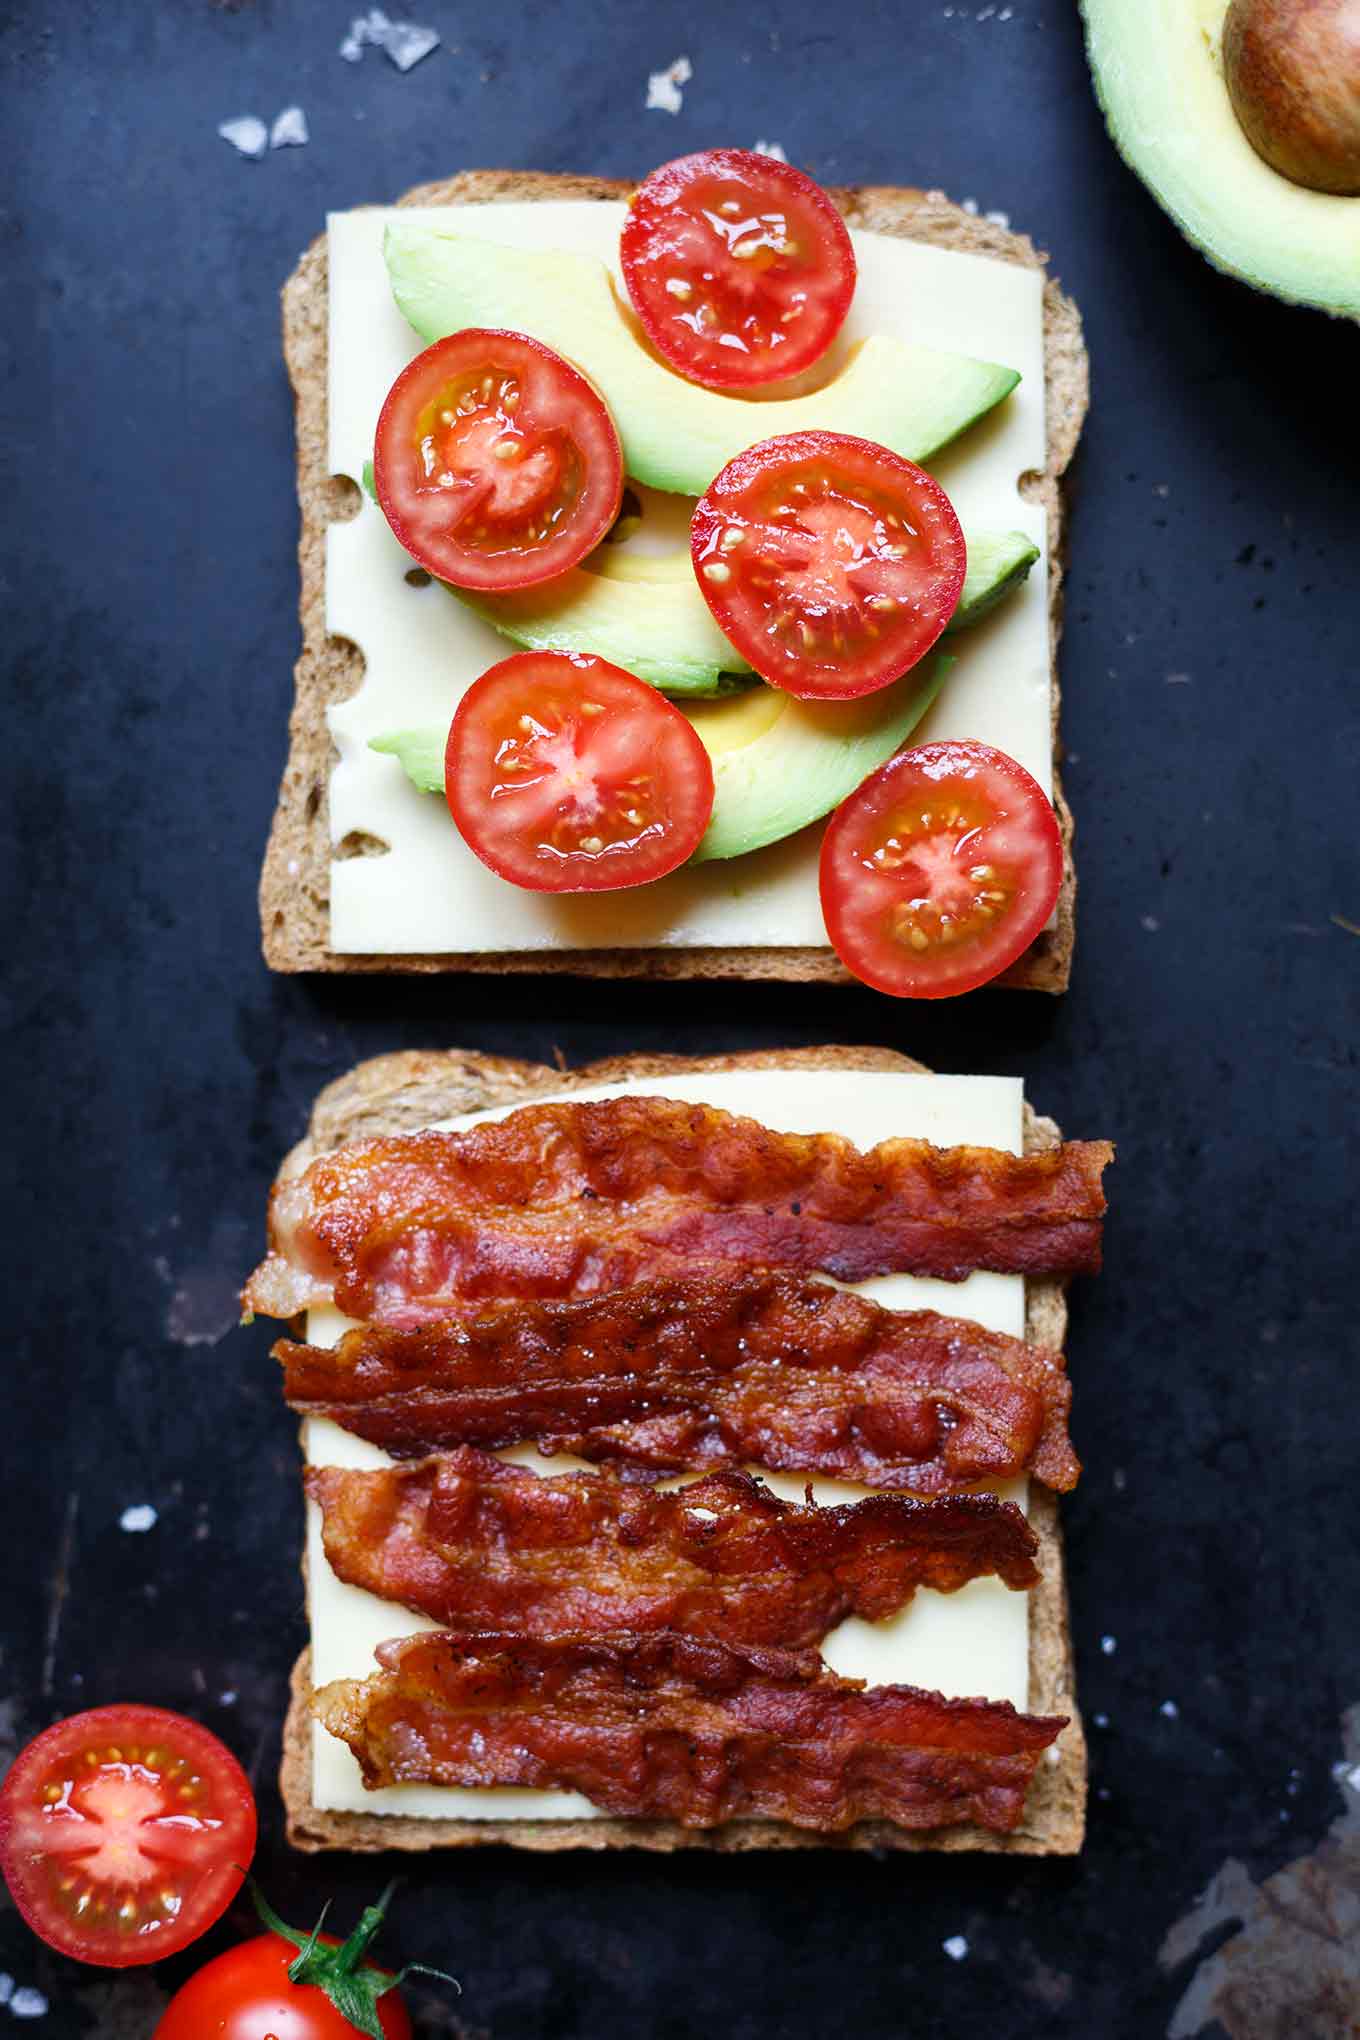 Werbung. Avocado Bacon Grilled Cheese Sandwich. OMG, wie einfach und köstlich! Dieses schnelle Feierabendrezept braucht ihr. - Kochkarussell.com #grilledcheesesandwich #avcado #bacon #recipe #rezept #schnellundeinfach